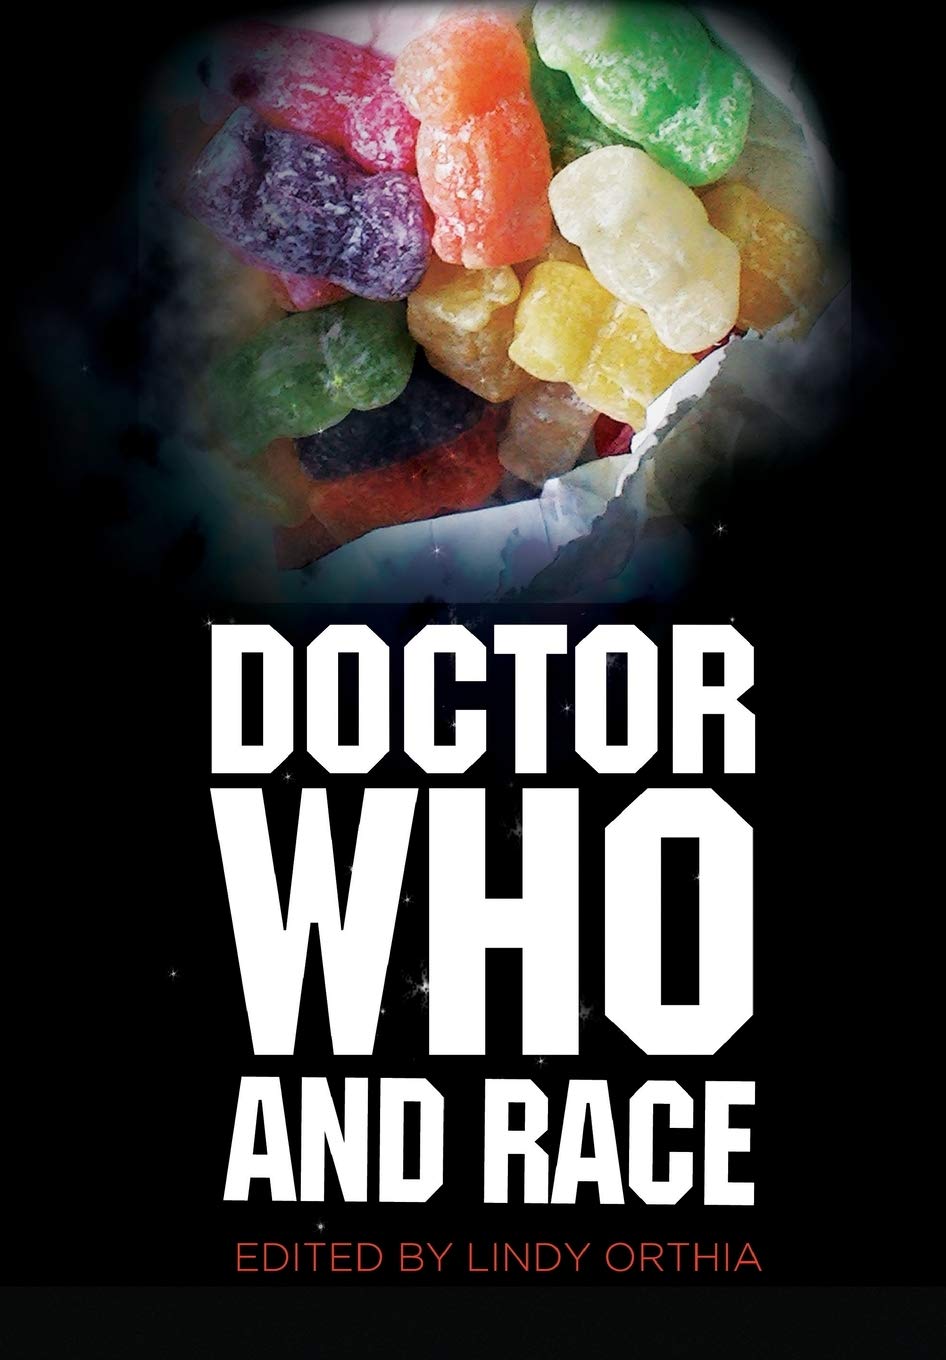 Libri Orthia - Doctor Who And Race Pb NUOVO SIGILLATO, EDIZIONE DEL 15/08/2013 SUBITO DISPONIBILE